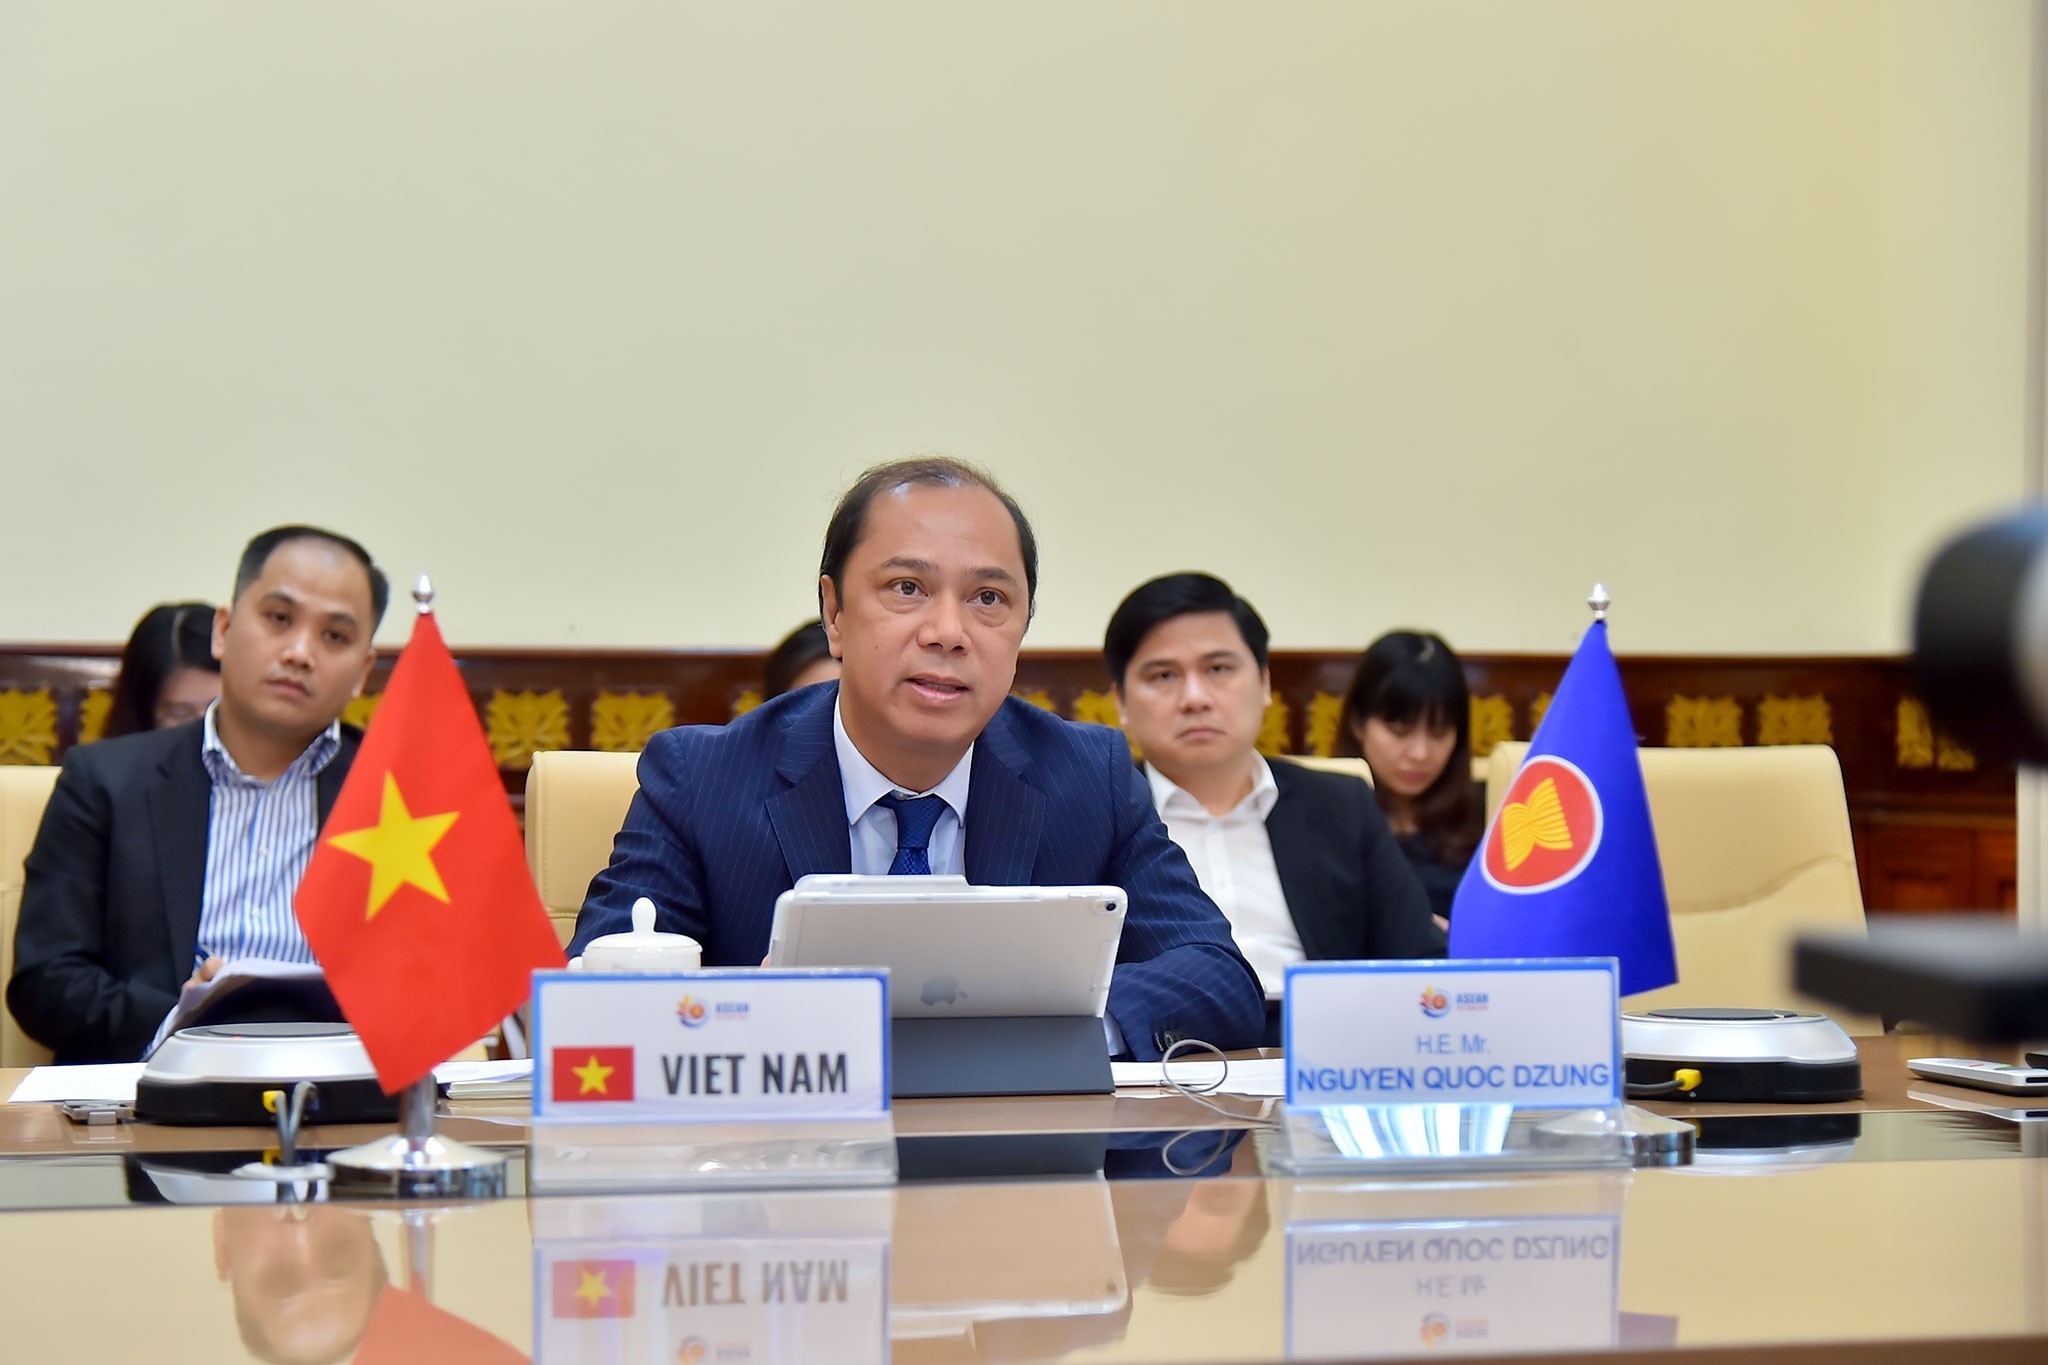 Sáng ngày 18/5/2020, cuộc họp các Quan chức cao cấp (SOM) ASEAN, cấp Thứ trưởng Ngoại giao, đã diễn ra bằng hình thức họp trực tuyến. Thứ trưởng Bộ Ngoại giao, Trưởng SOM ASEAN Việt Nam, Nguyễn Quốc Dũng tham dự Cuộc họp trong vai trò Chủ tịch ASEAN 2020. (Nguồn: TTXVN)